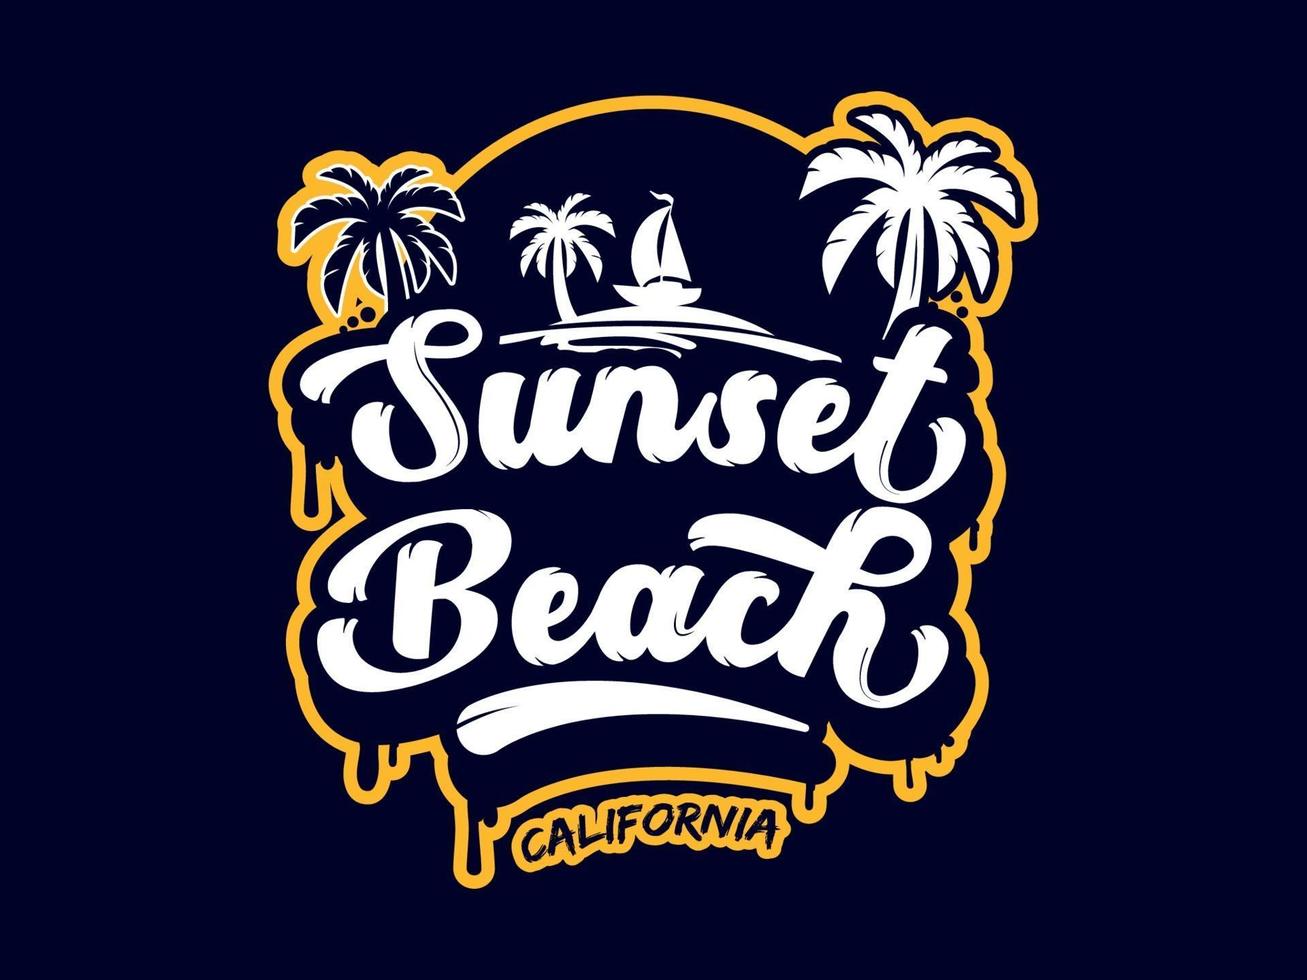 california sunset beach illustration vektor design för t-shirt